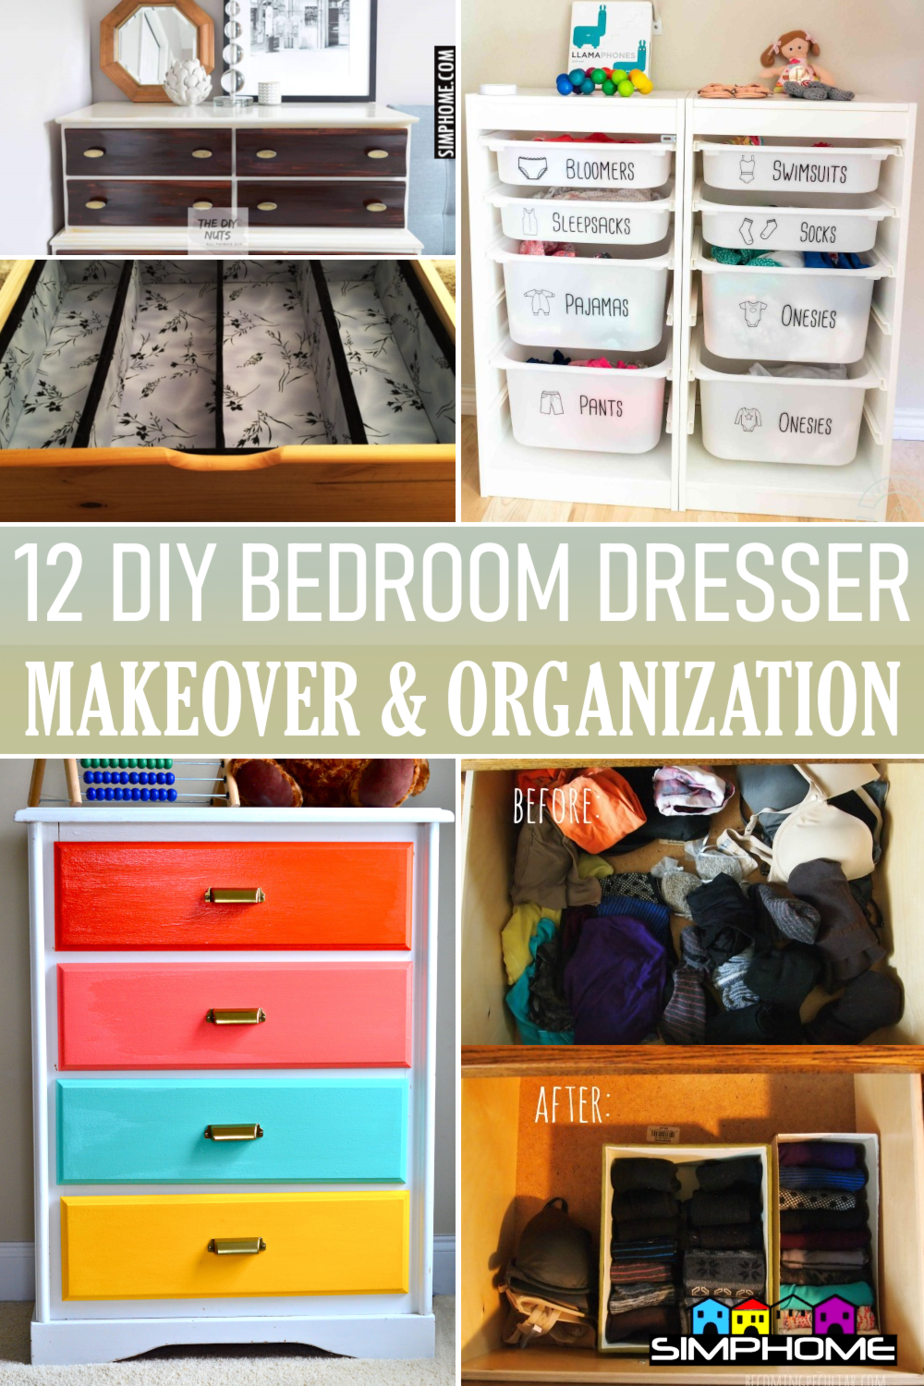 12 Bedroom Dresser Organization via Simphome.comFeatured